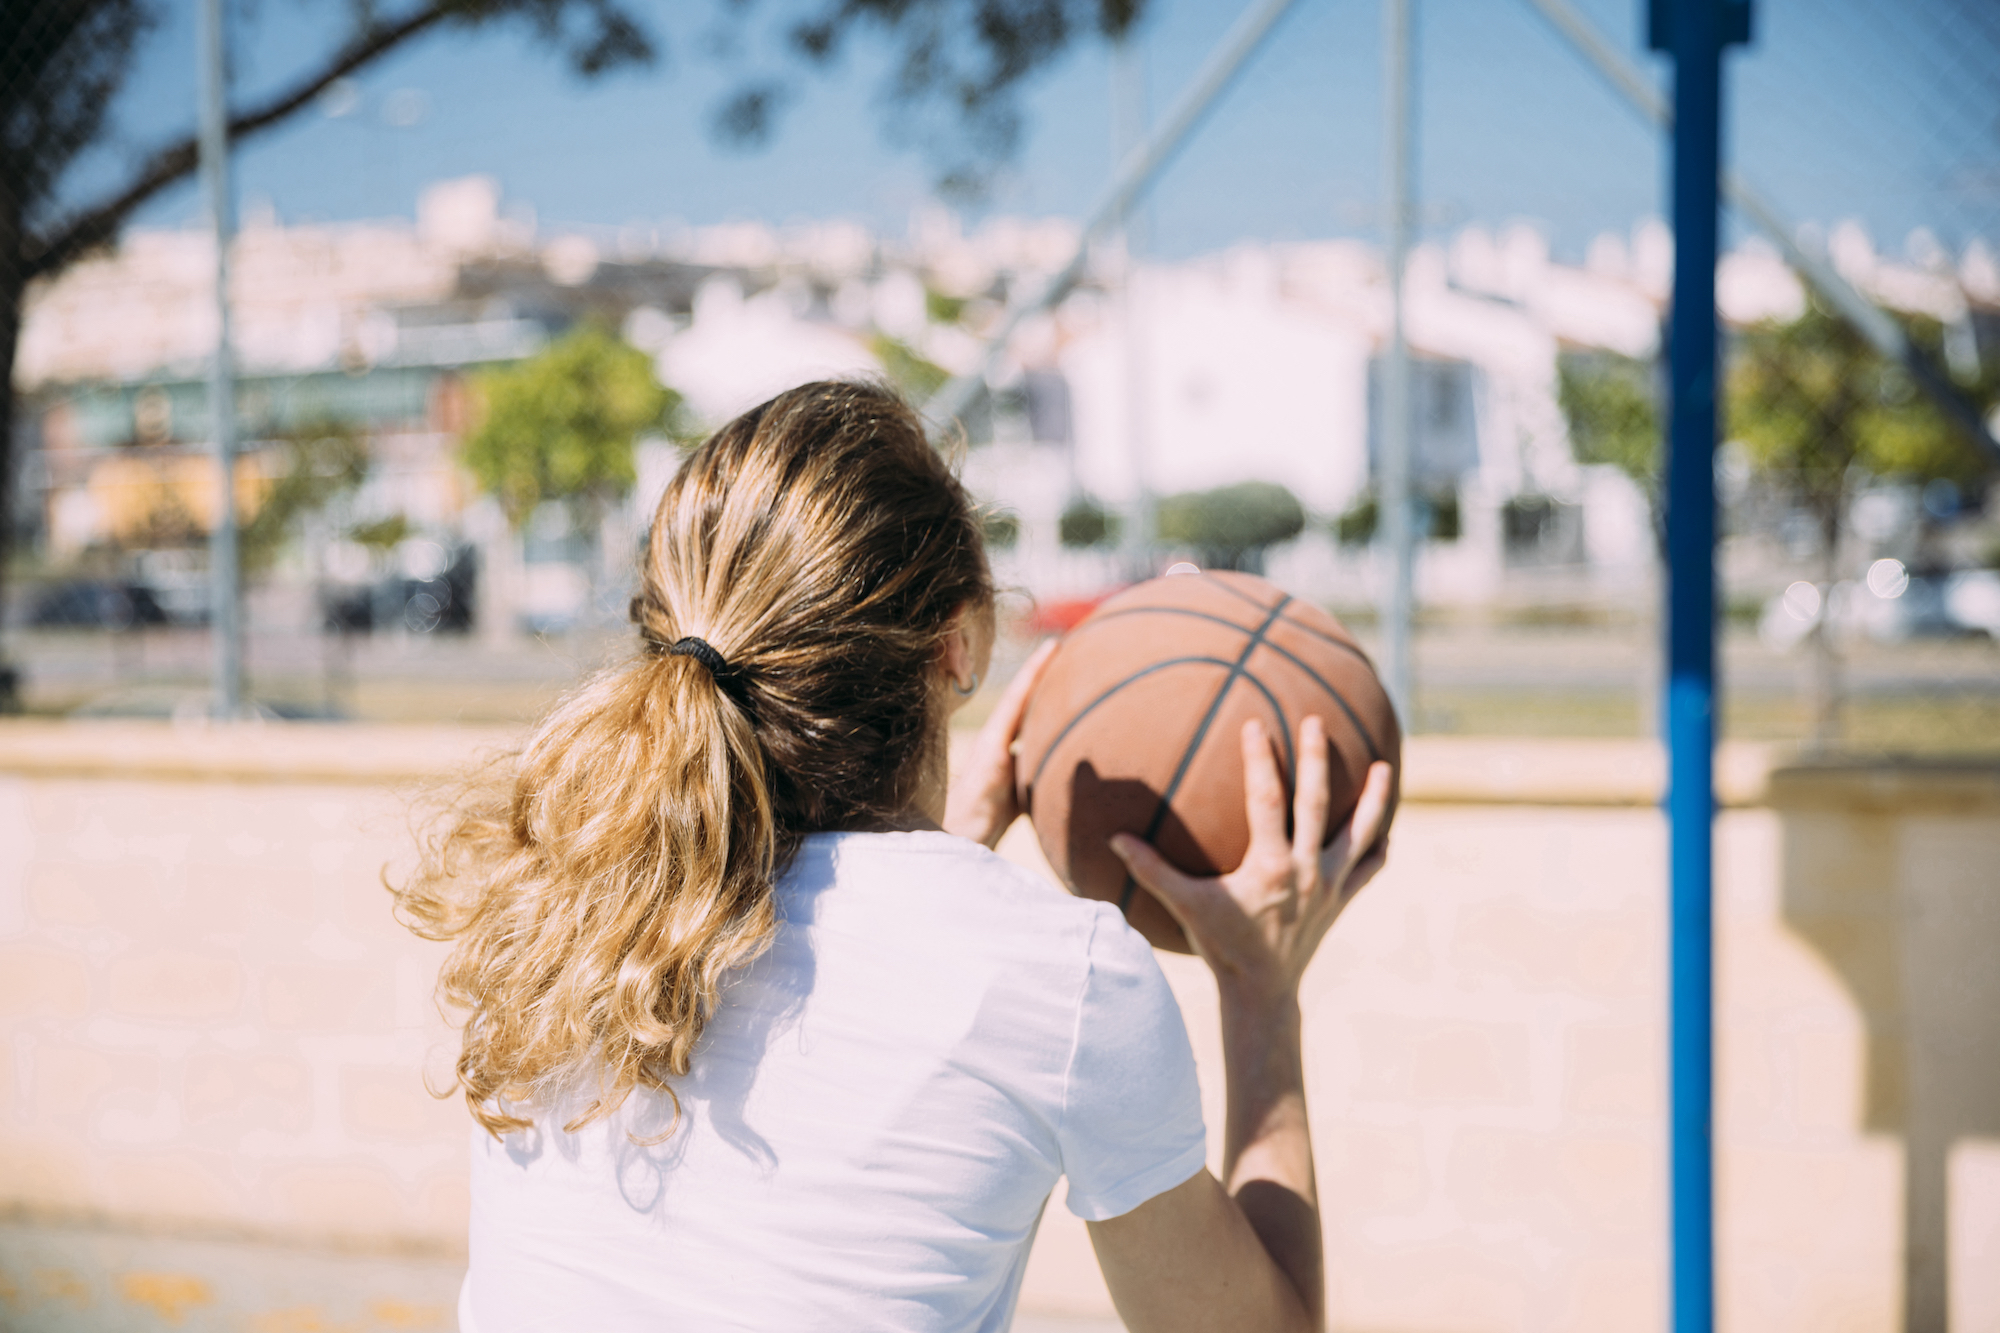 http://basketballschool.it/wp-content/uploads/2021/03/young-woman-playing-basketball.jpeg